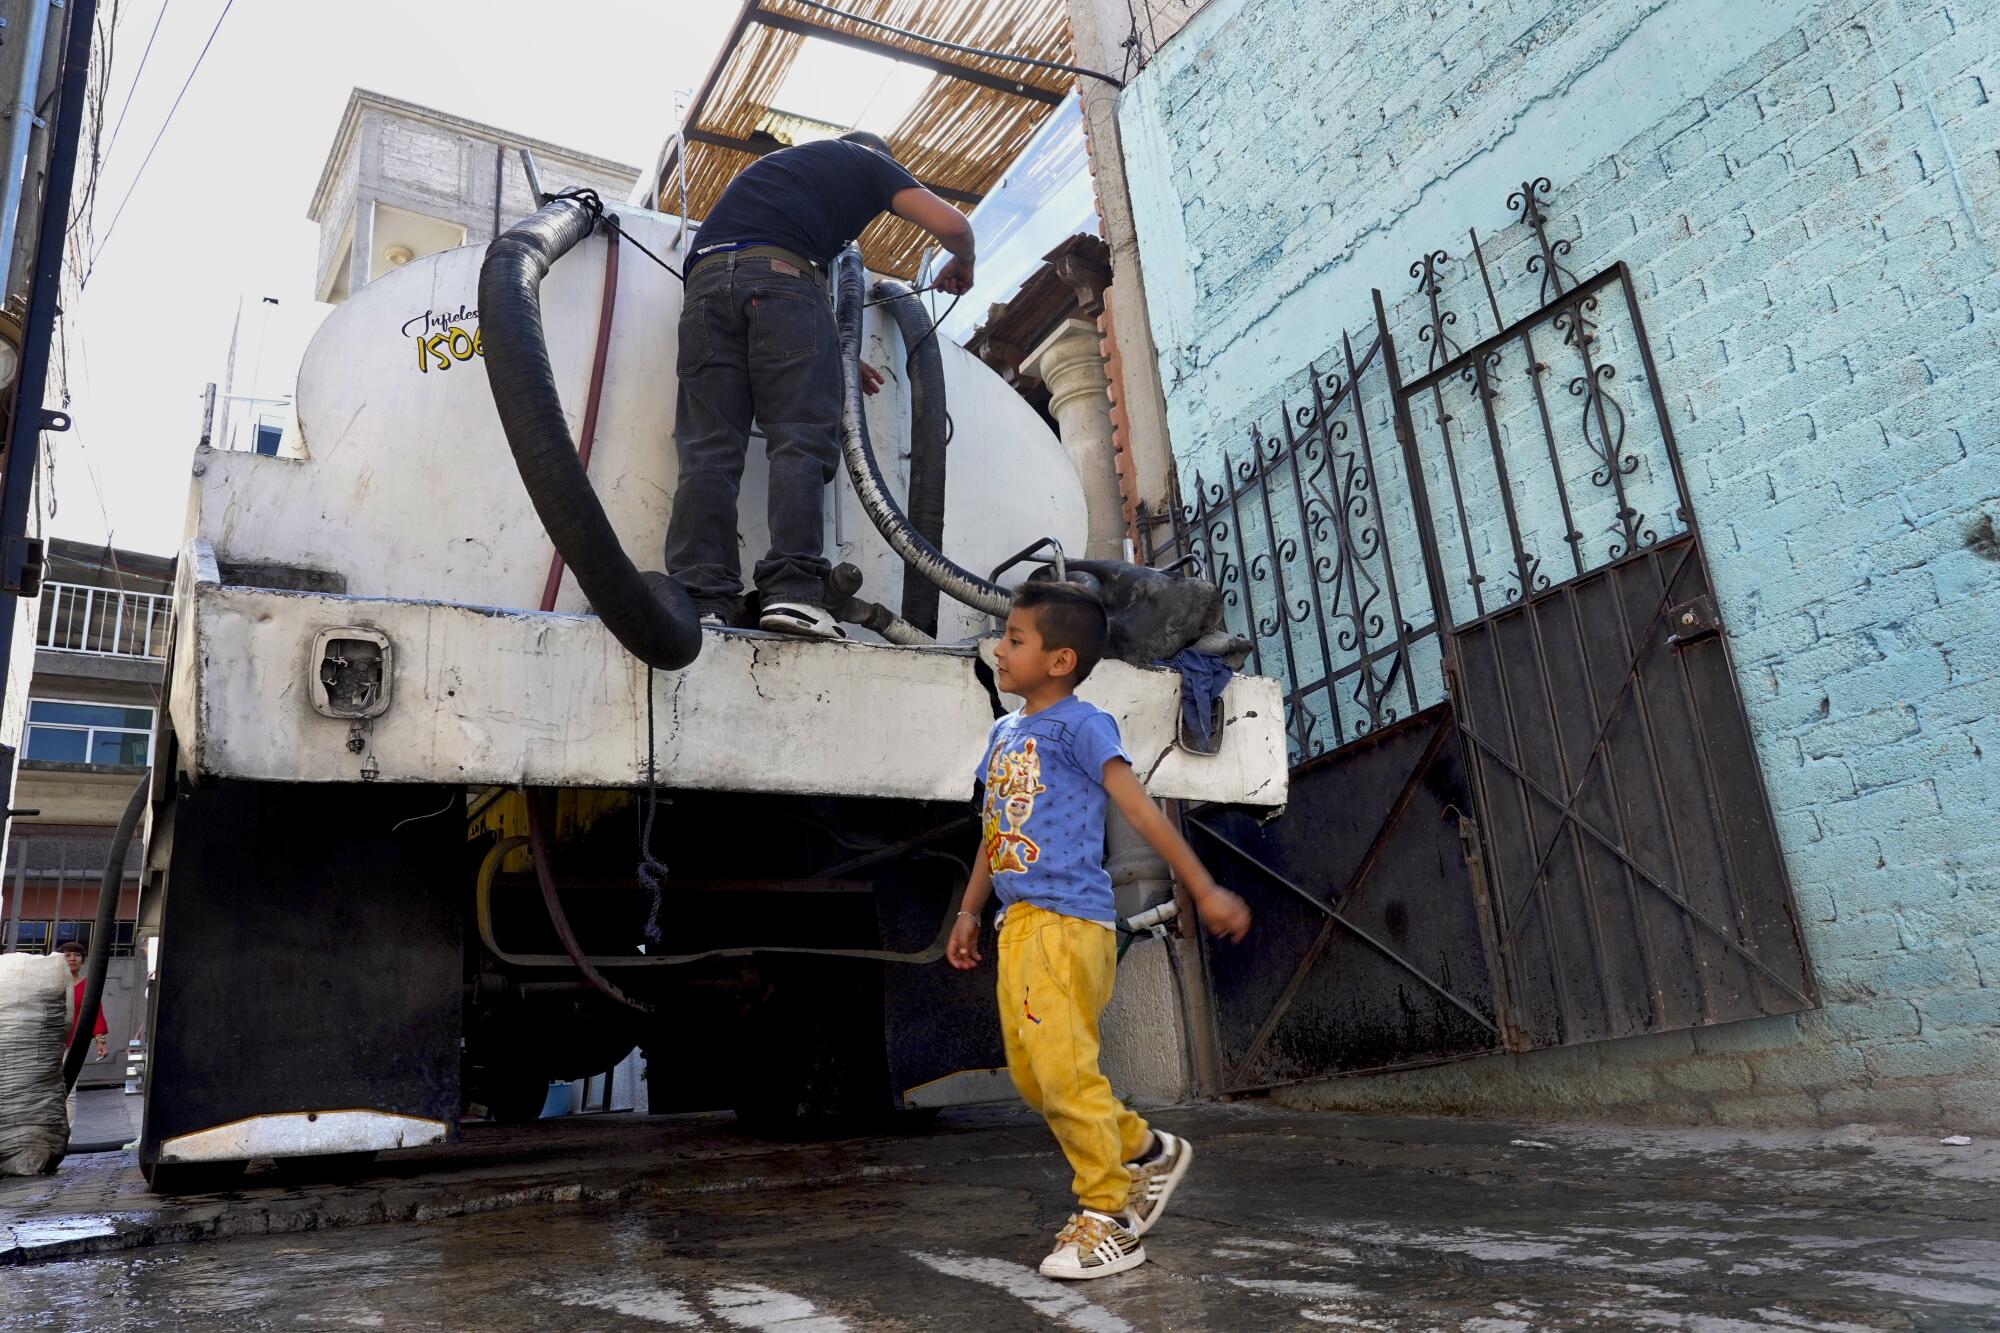 一名男子站在水车上，一名 5 岁男孩走在水车后面。